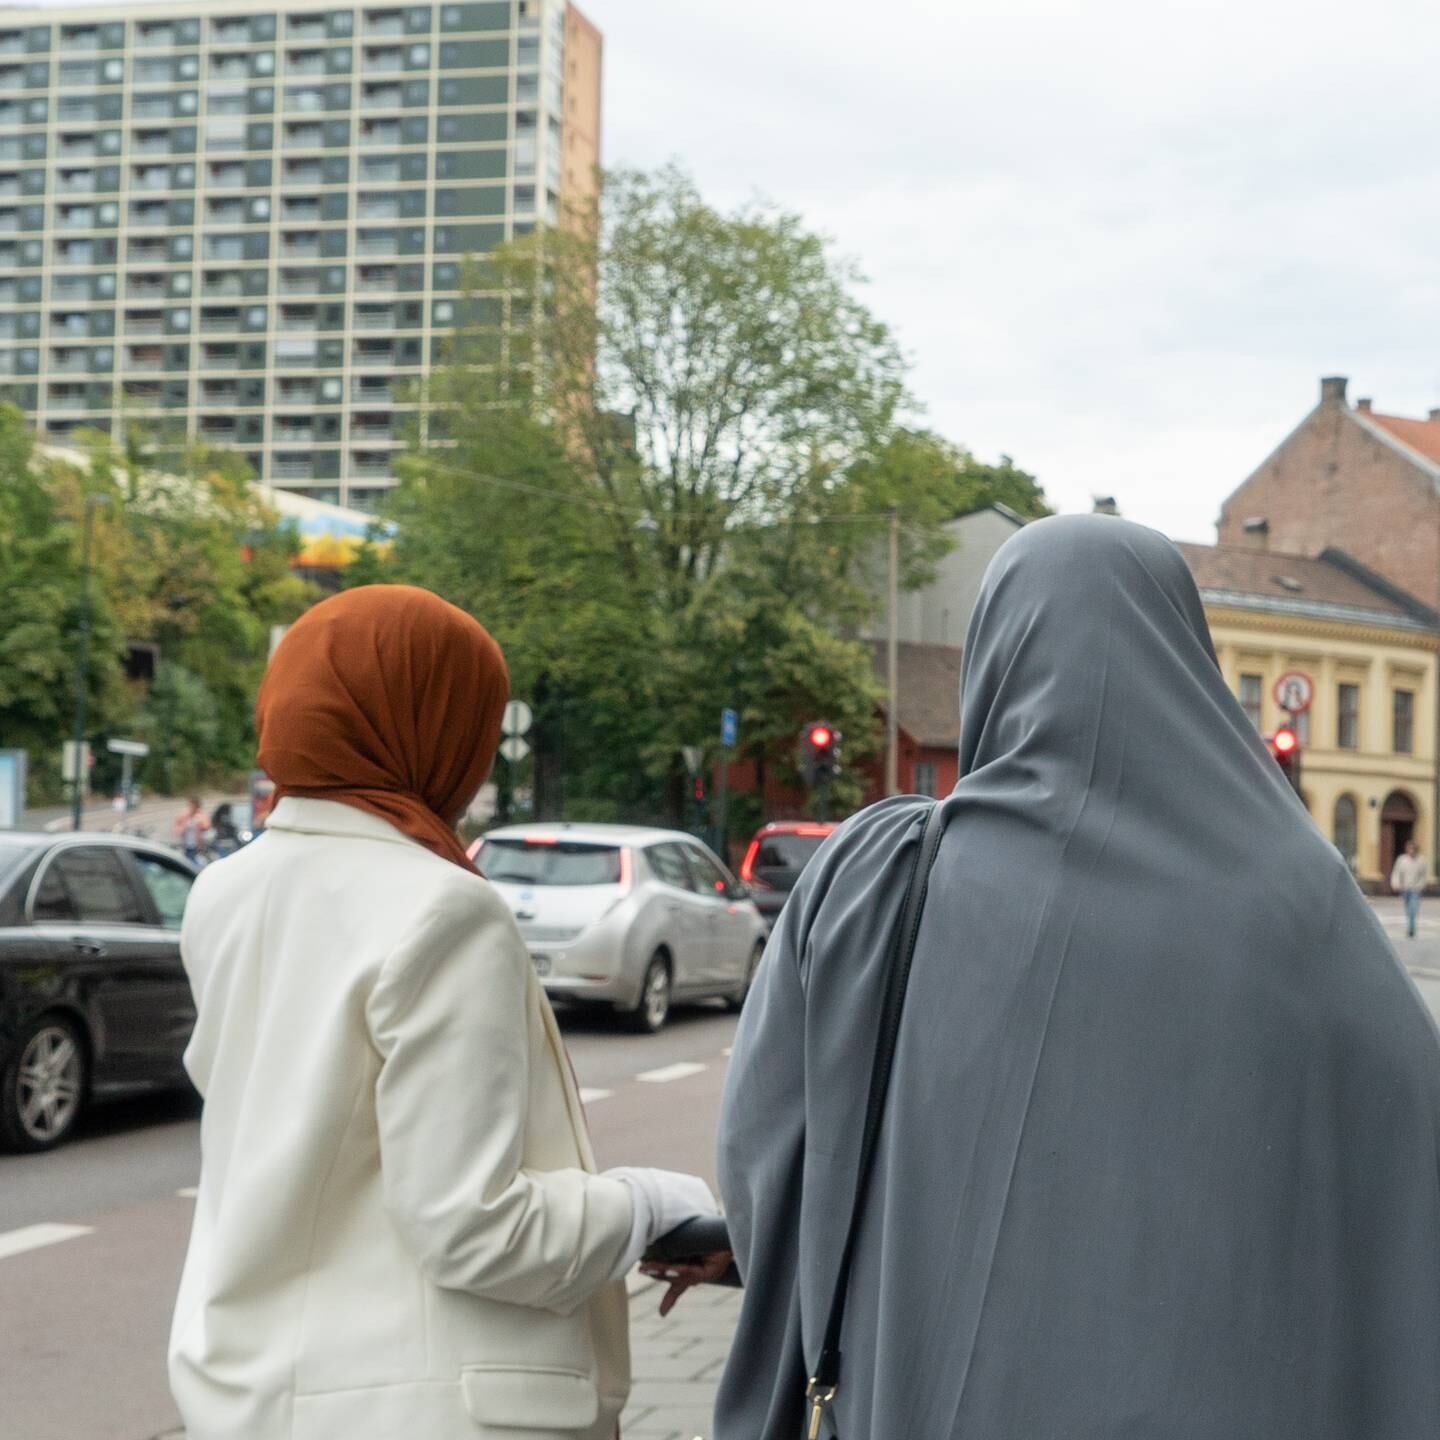 Hijab debatt med folk på Grønland/Tøyen etter Christian Tybring-Gjedde(FrP) uttalelse/sak.